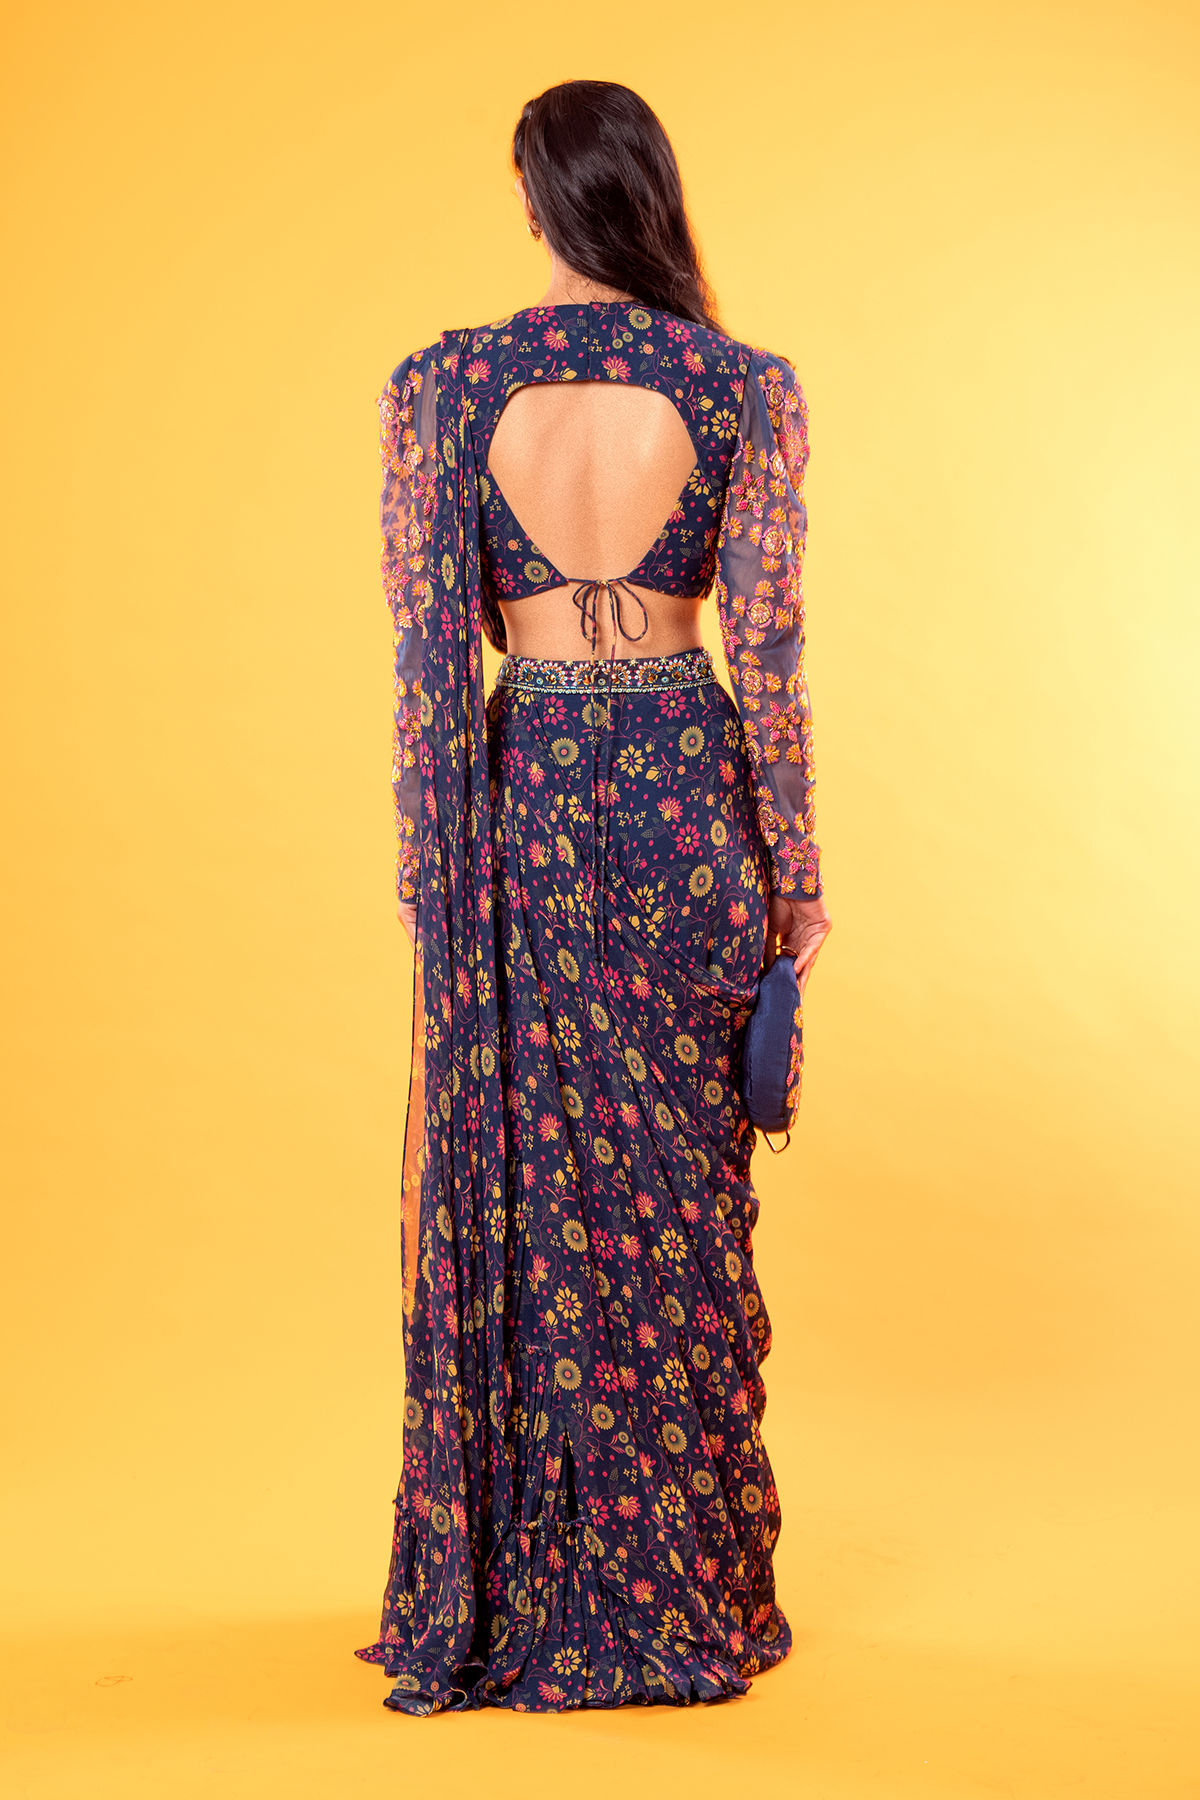 Punjabi | Scarf women fashion, Designer dresses indian, Dress indian style